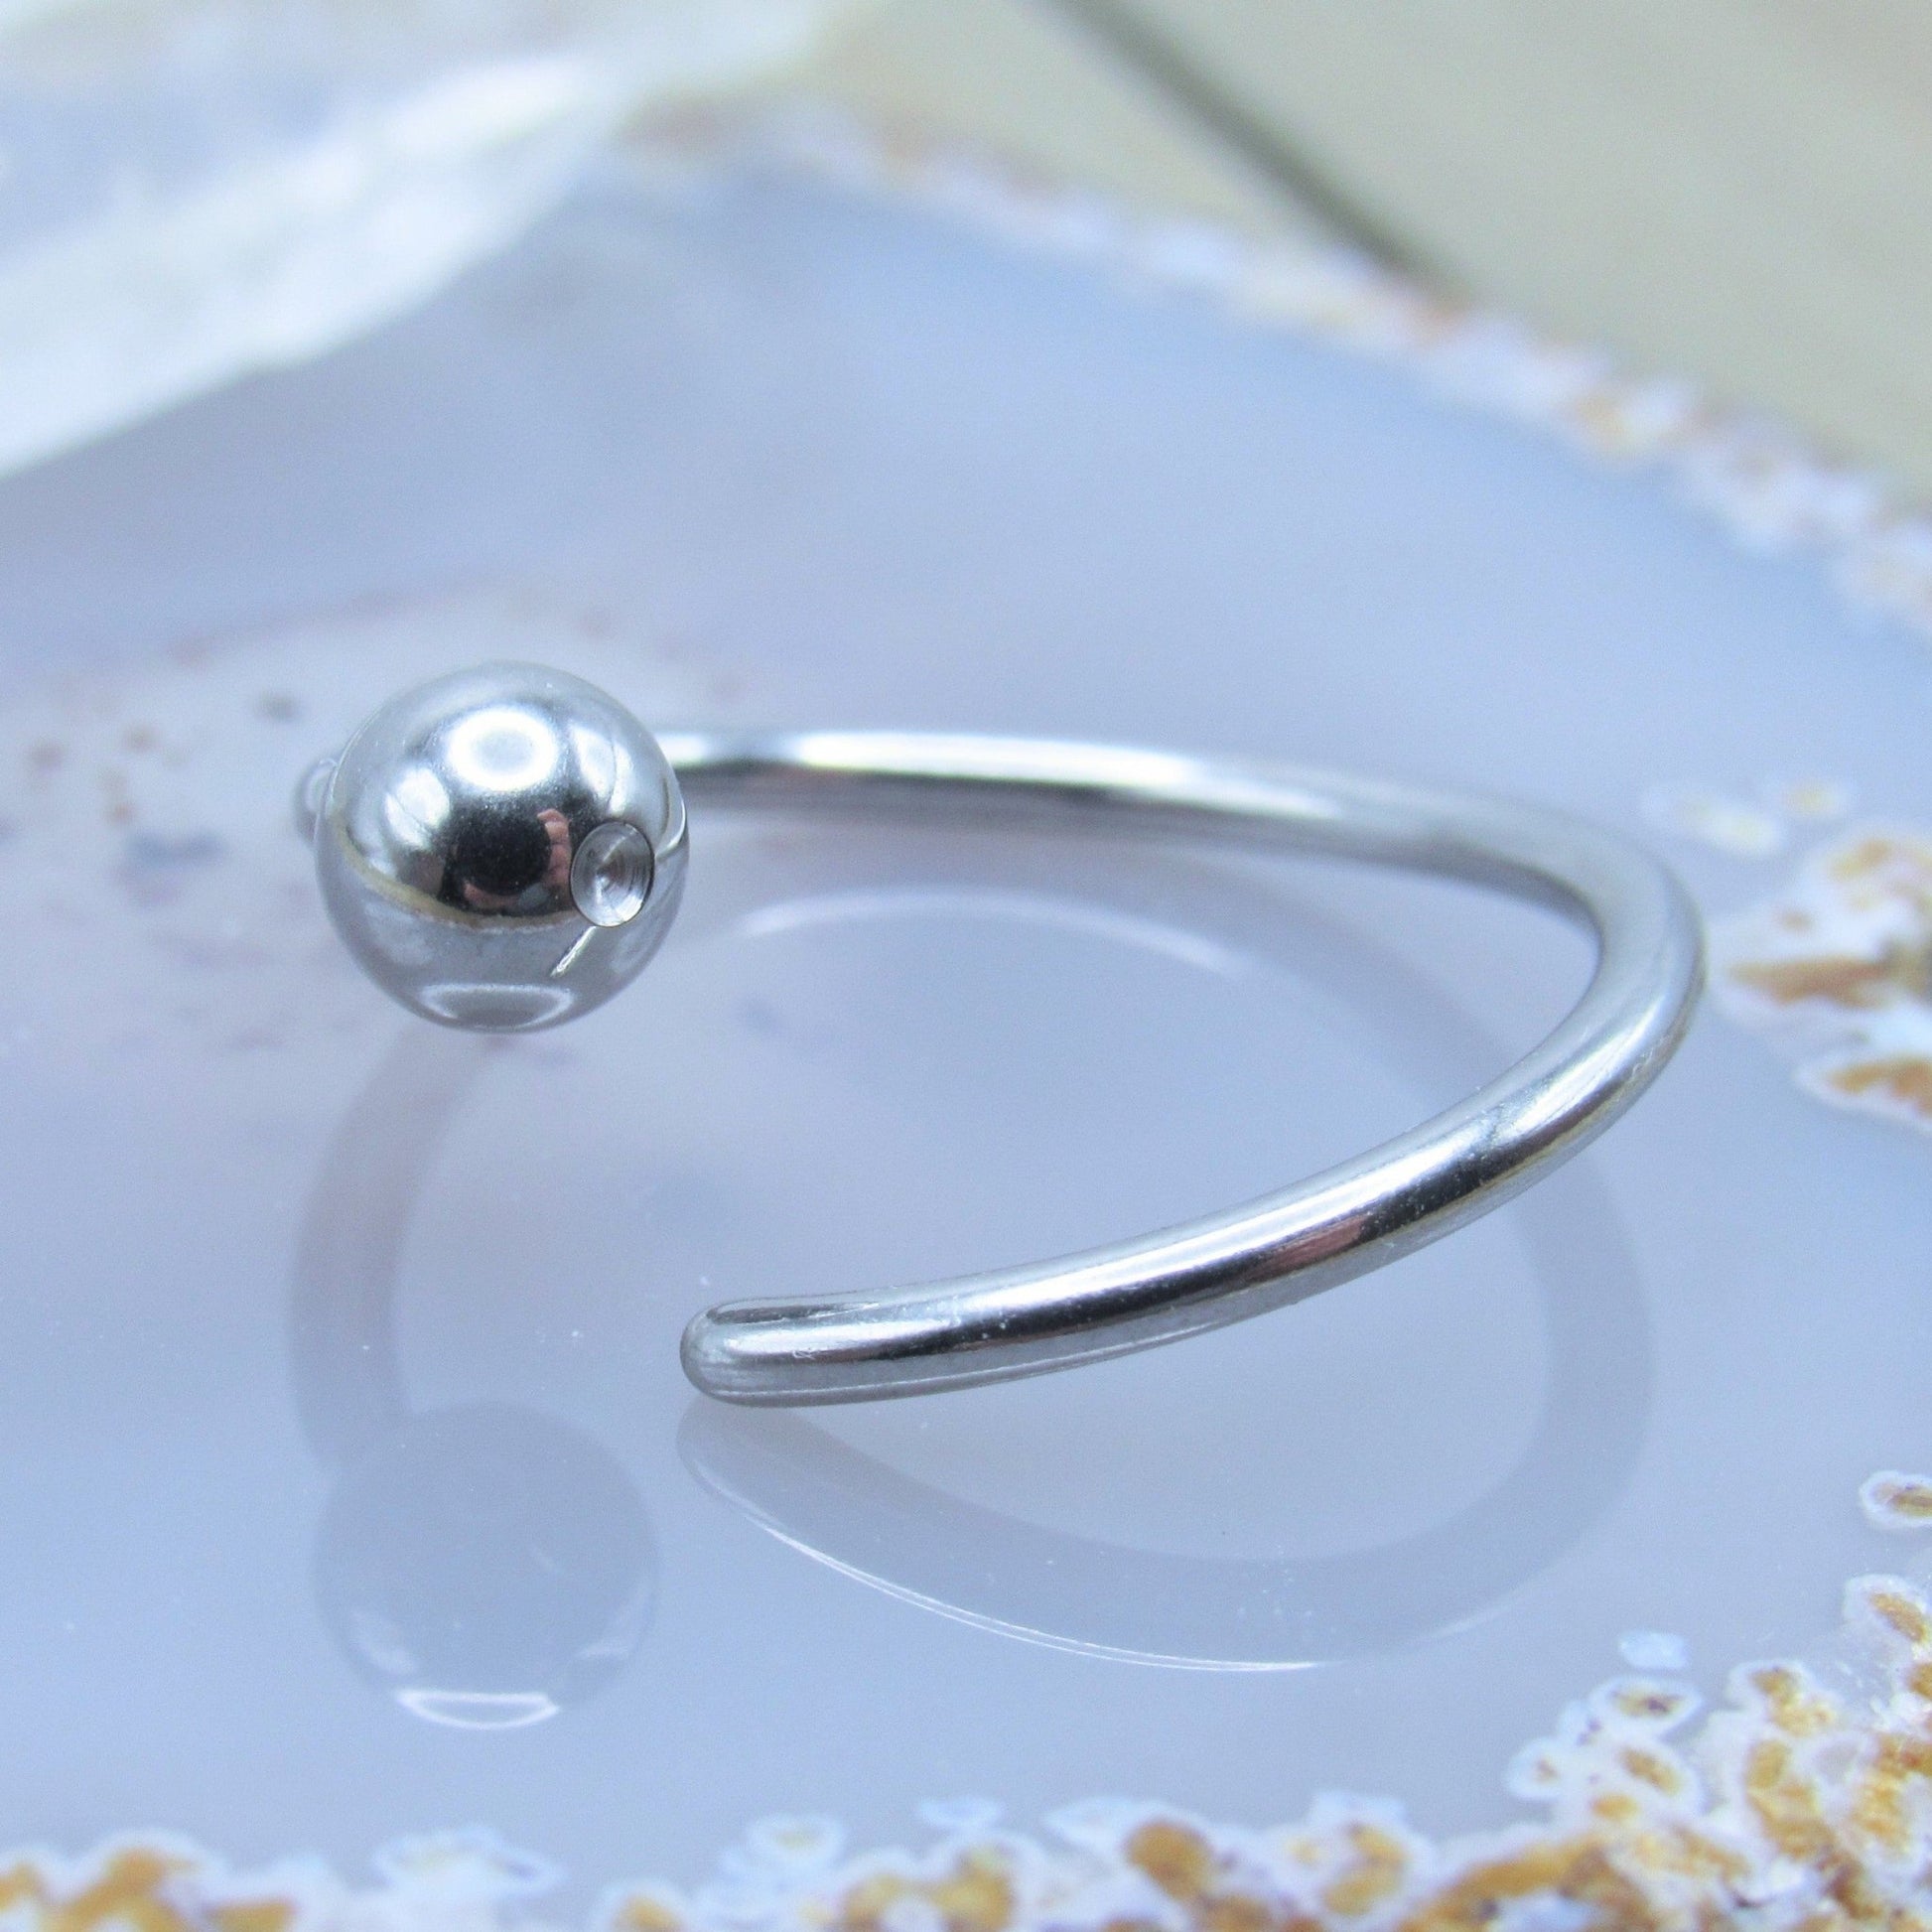 Silver nipple piercing hoop 14g 5/8 diameter annealed fixed bead